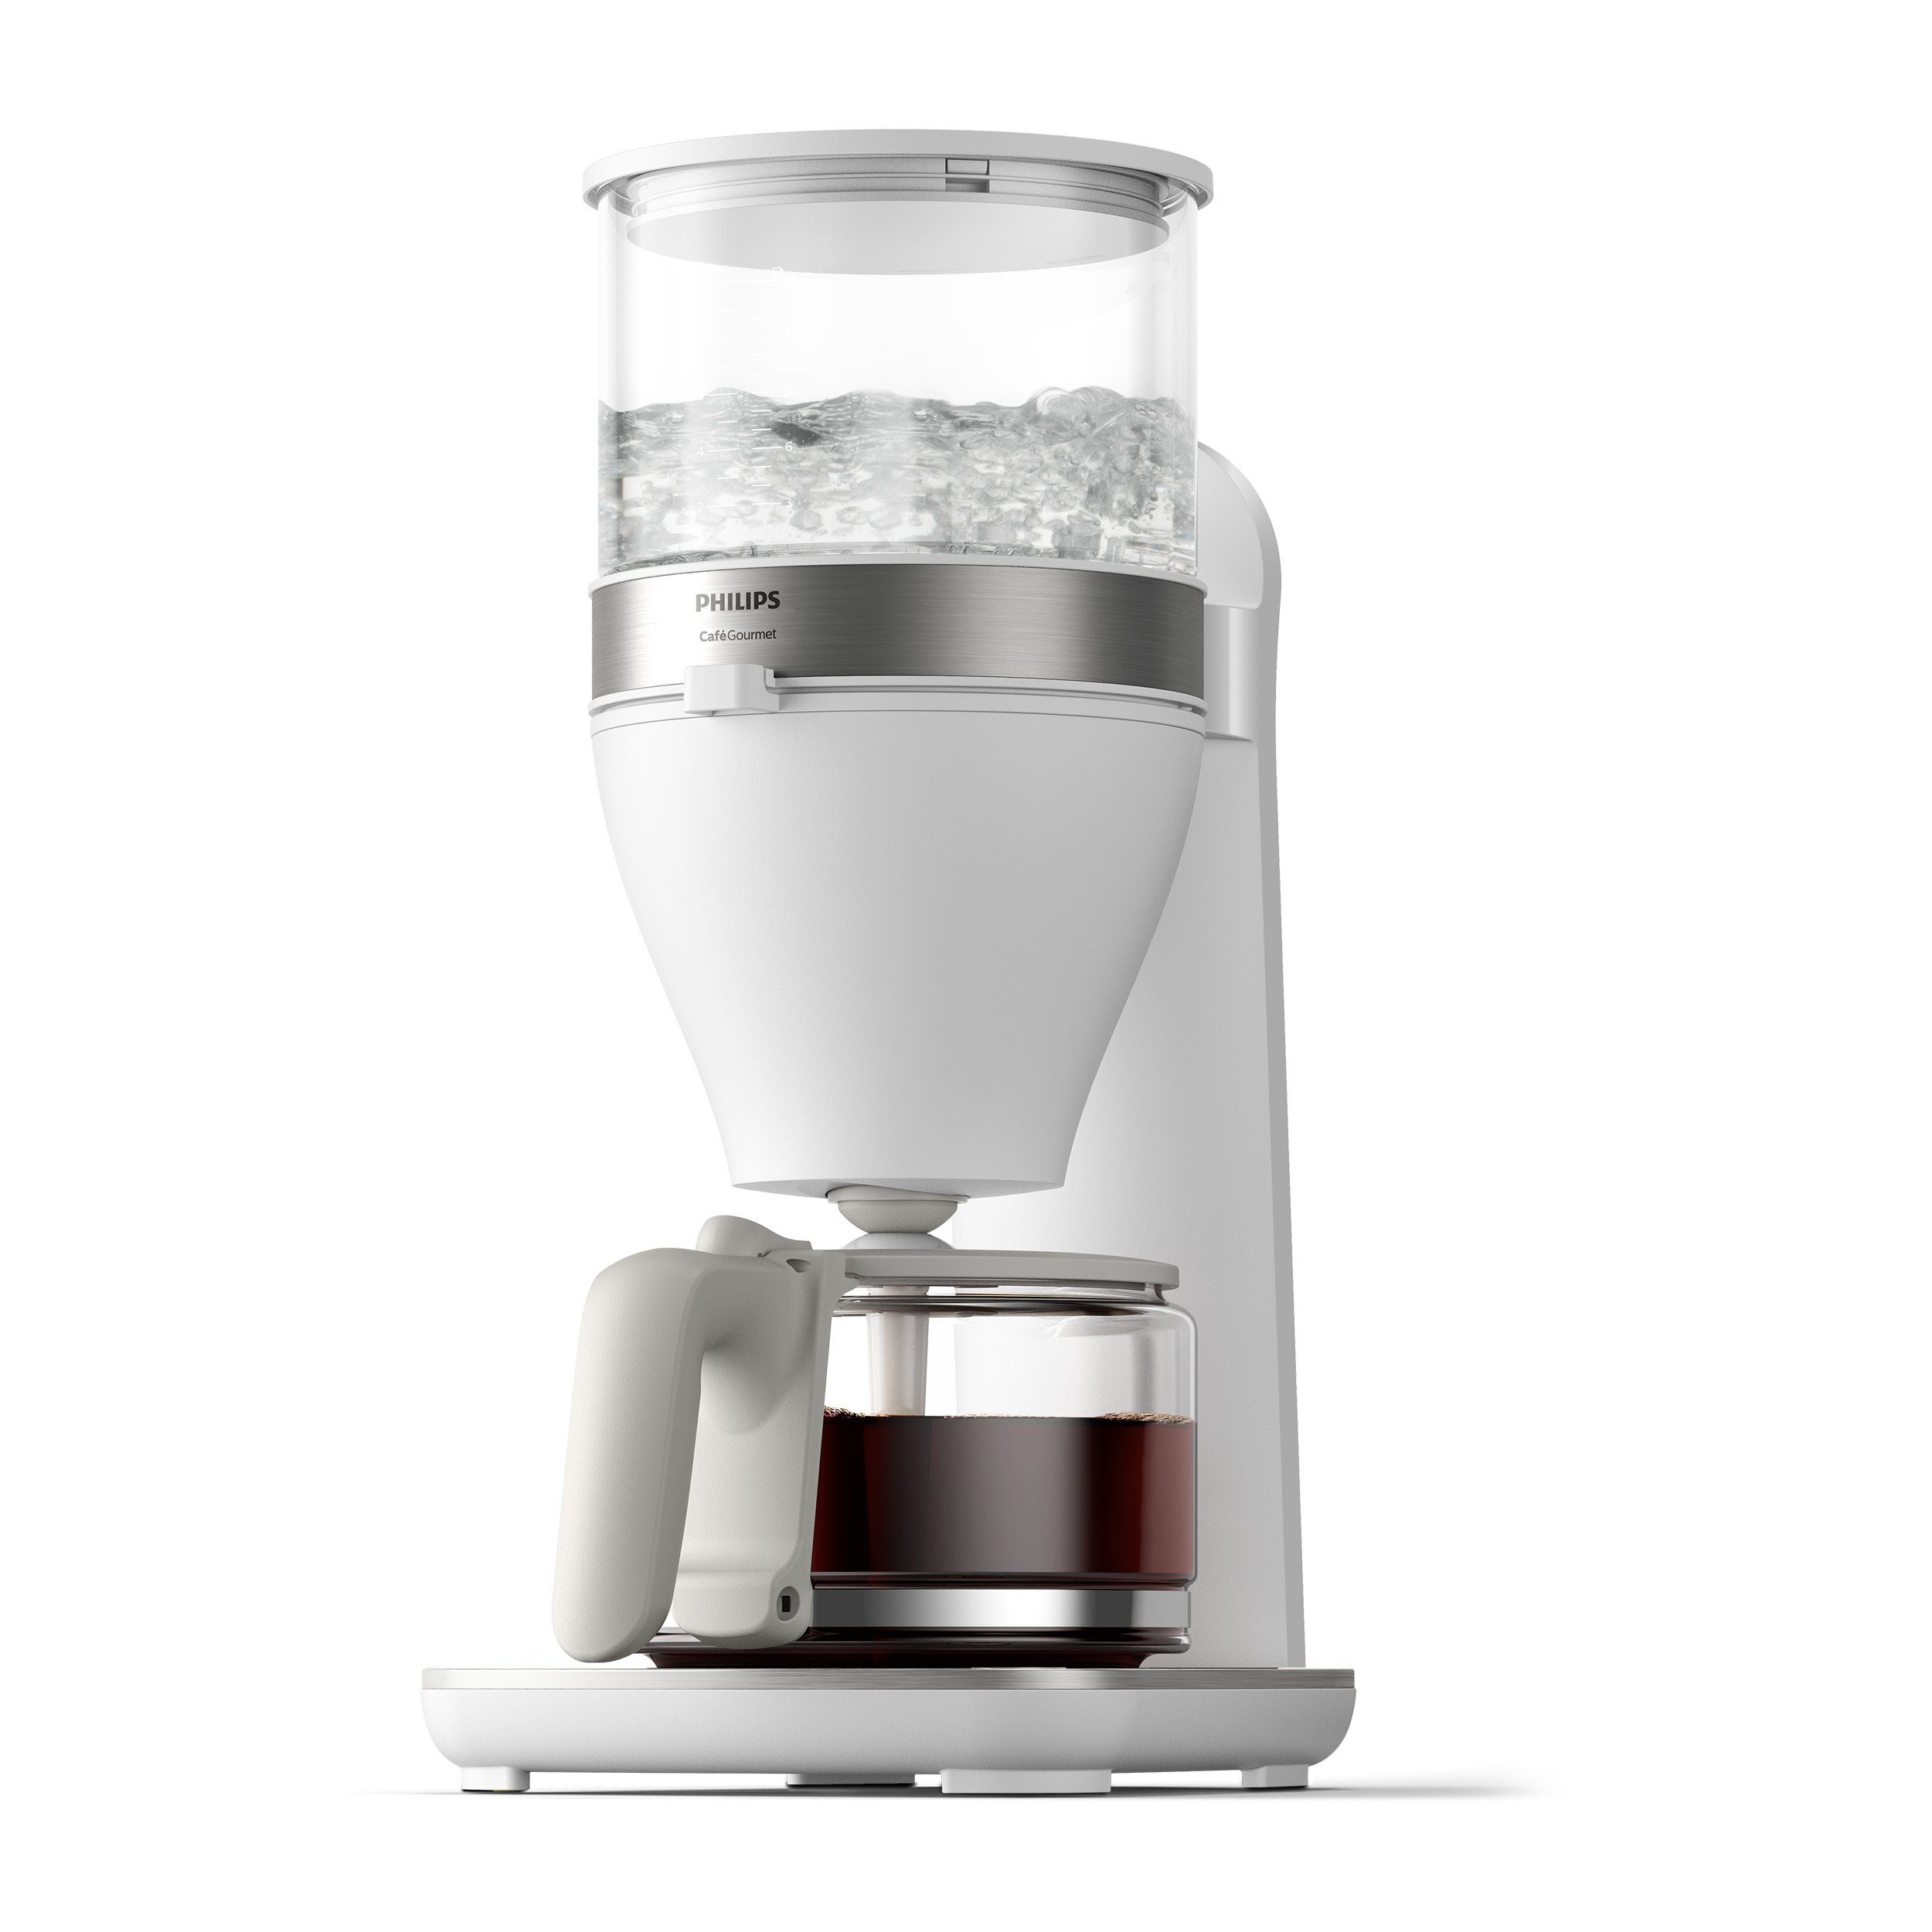 Philips Filterkaffeemaschine HD5416/00 Café Gourmet weiß, 1,25l Kaffeekanne, Papierfilter 1x4, mit Direkt-Brühprinzip, Aroma-Twister und Schwenkfilterhalter | Filterkaffeemaschinen